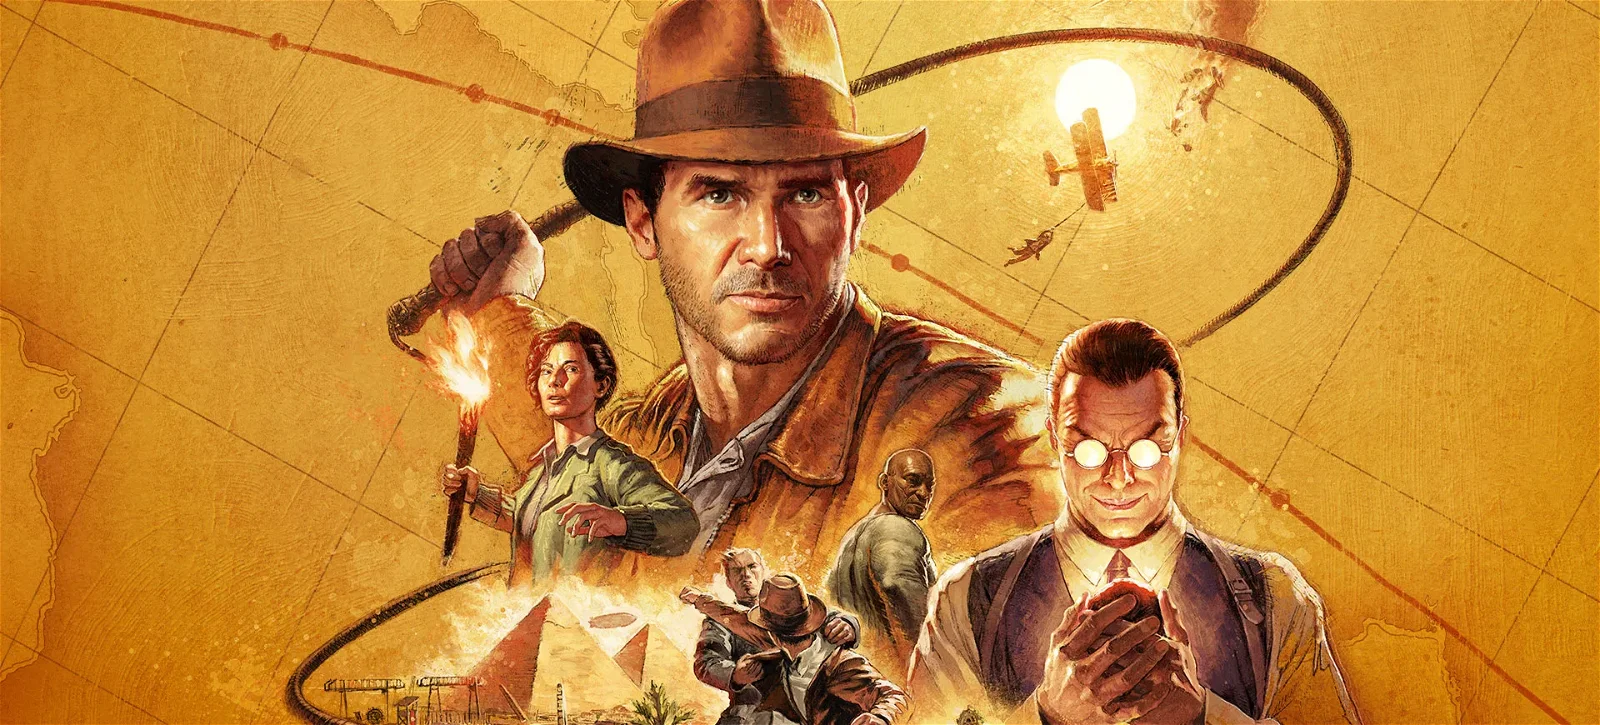 Indiana Jones e l'antico cerchio: ecco dove effettuare il preorder a prezzo scontato